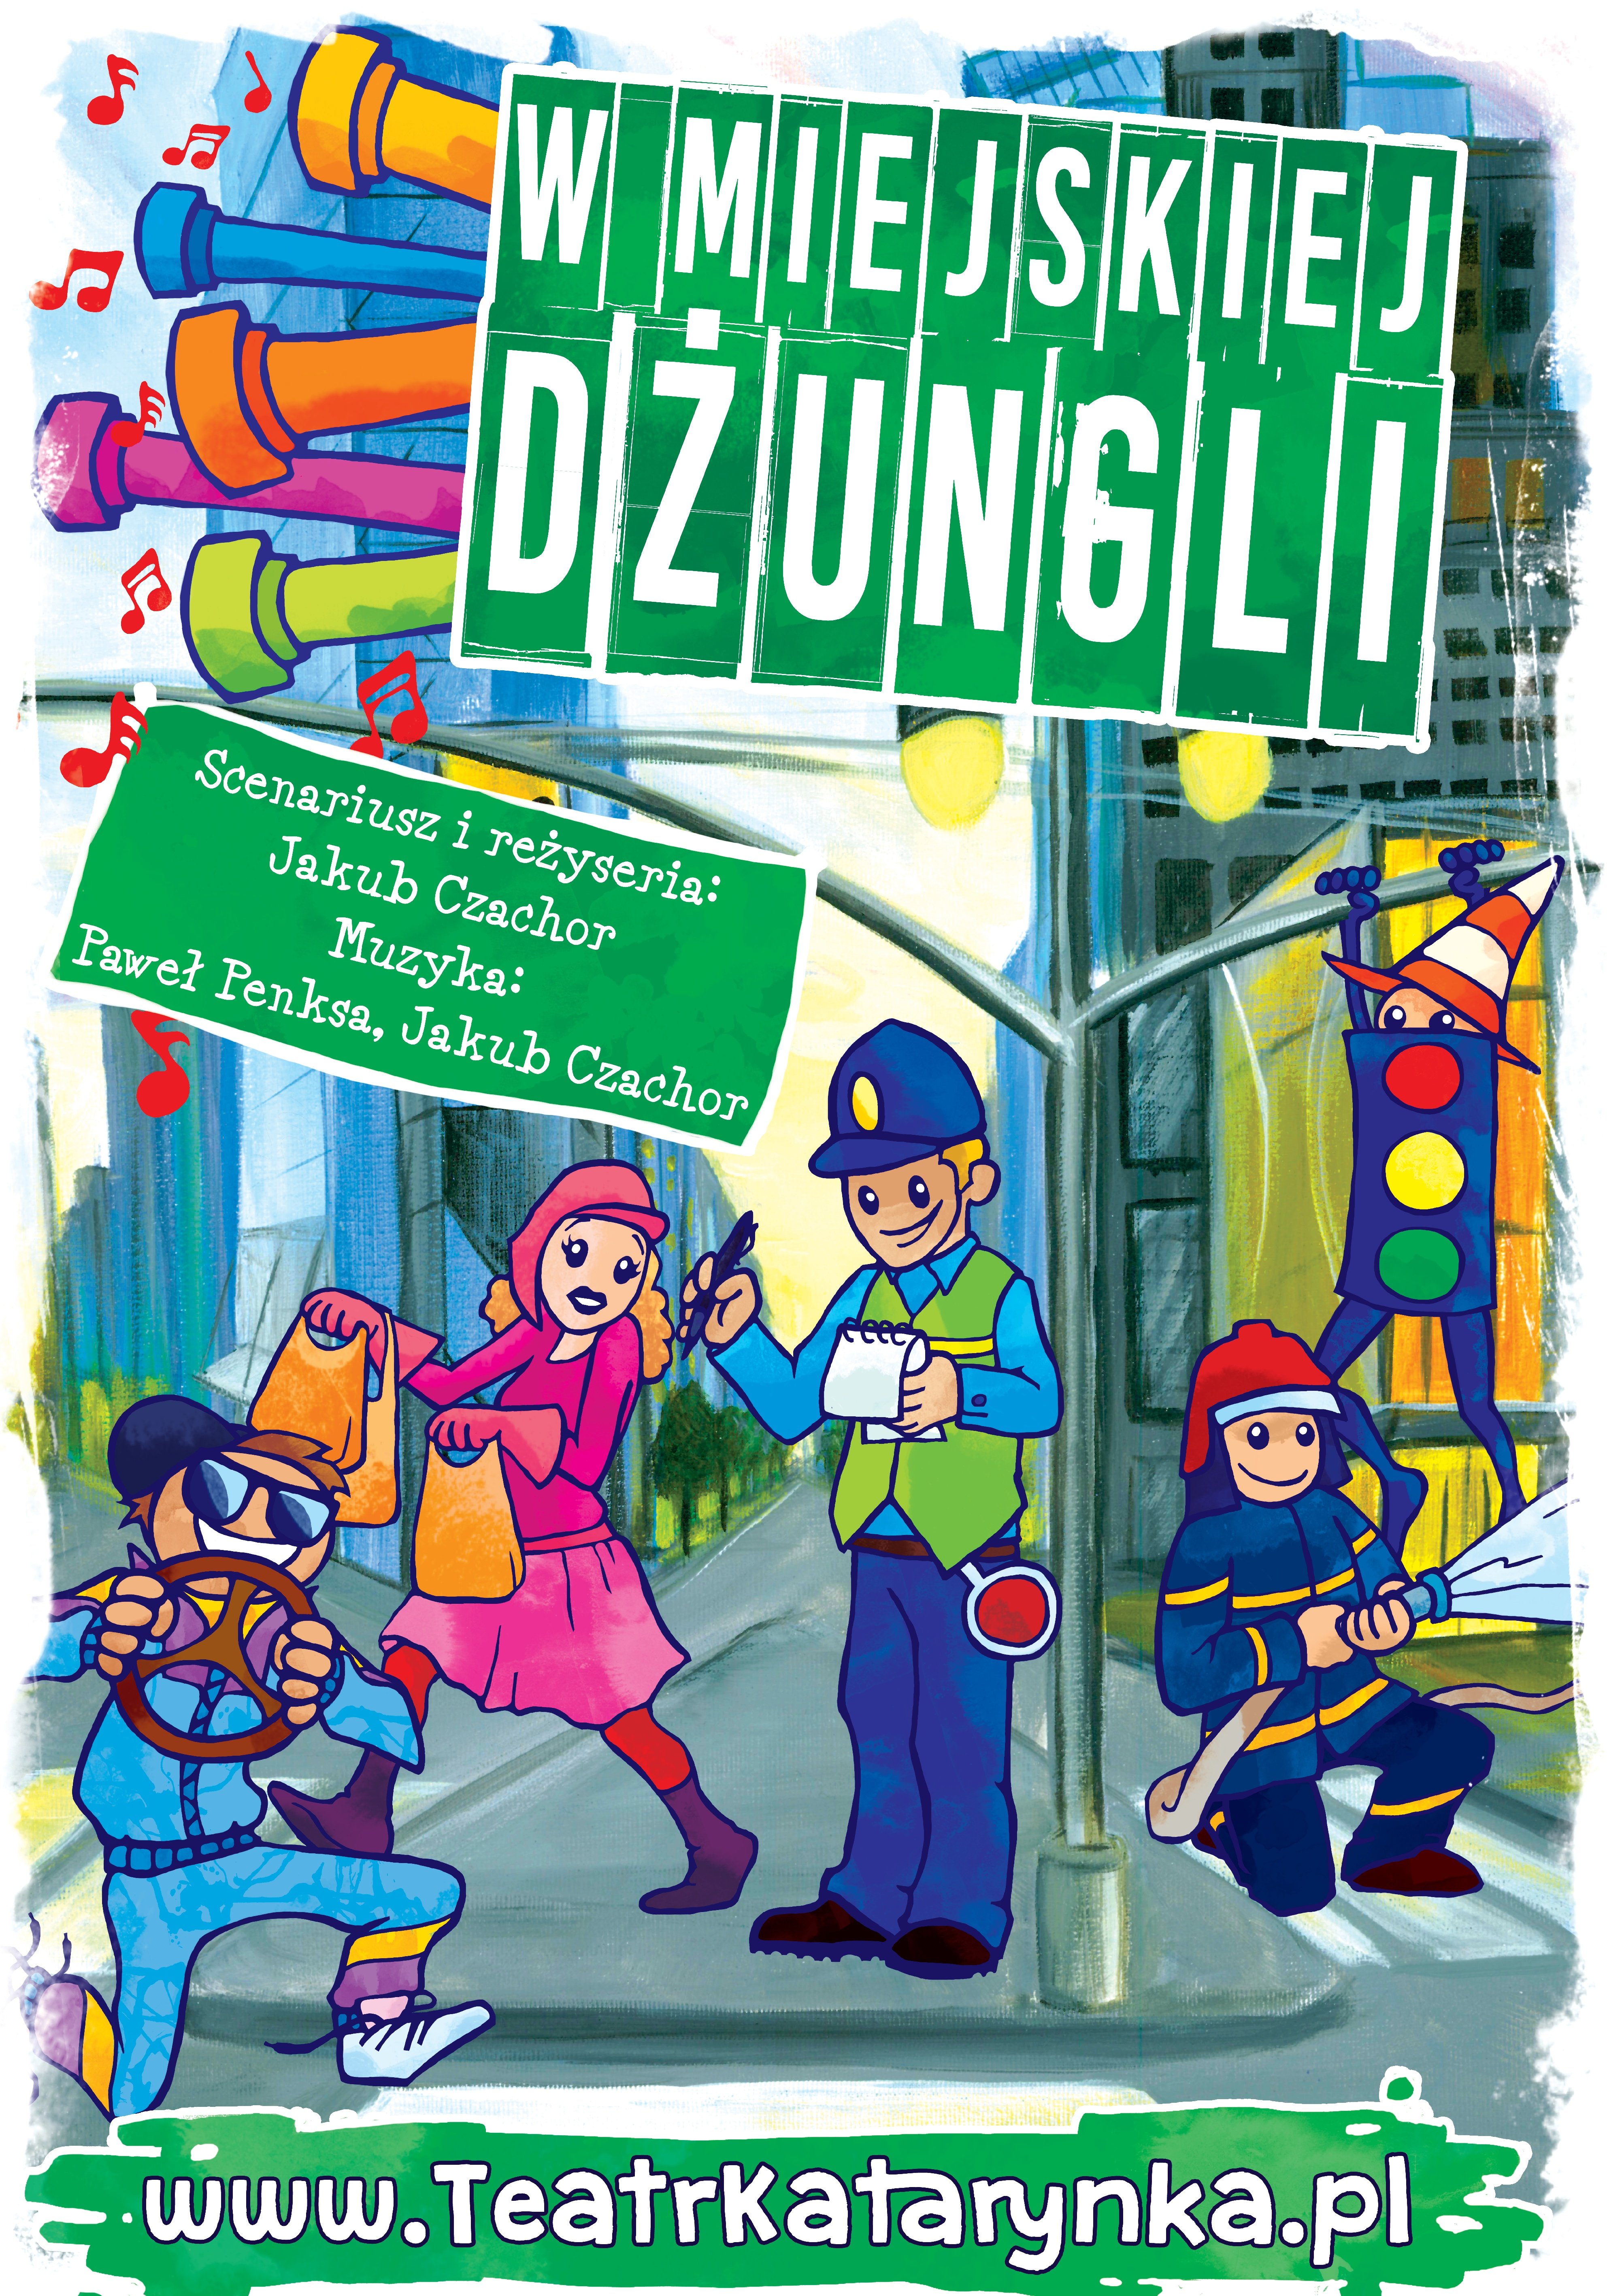 teatrkatarynka-plakat-w-miejskiej-dzungli-wersja1.jpg